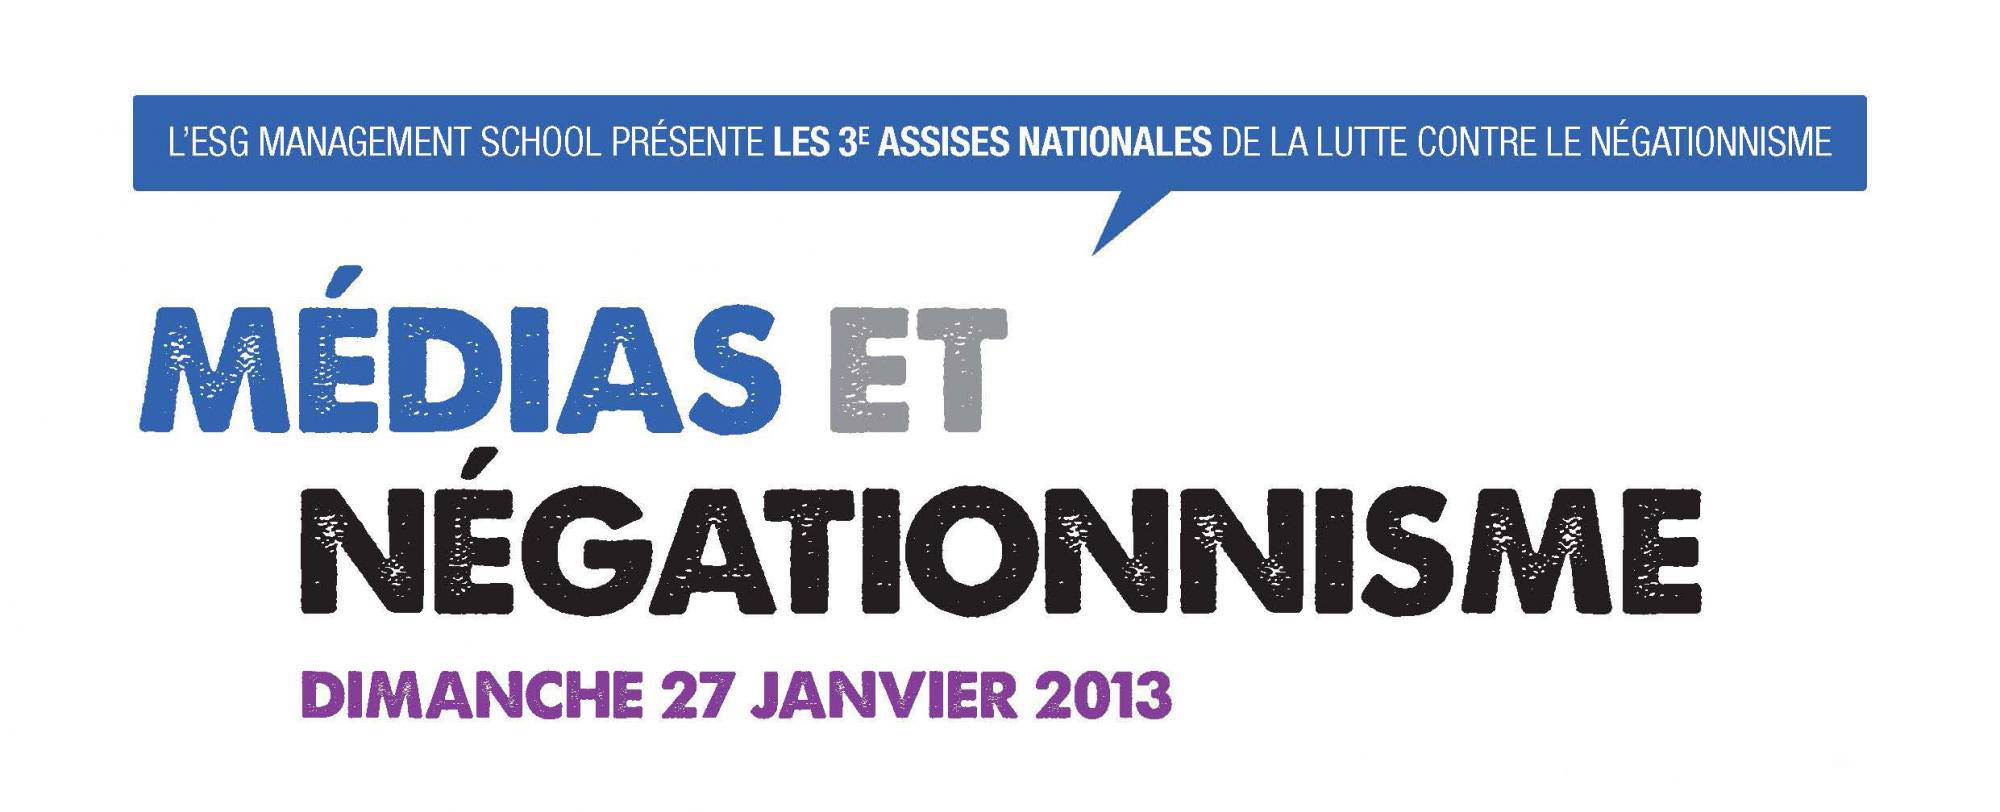 Assises Nationales de la lutte contre le Négationnisme le 27 janvier à l'ESG Management School